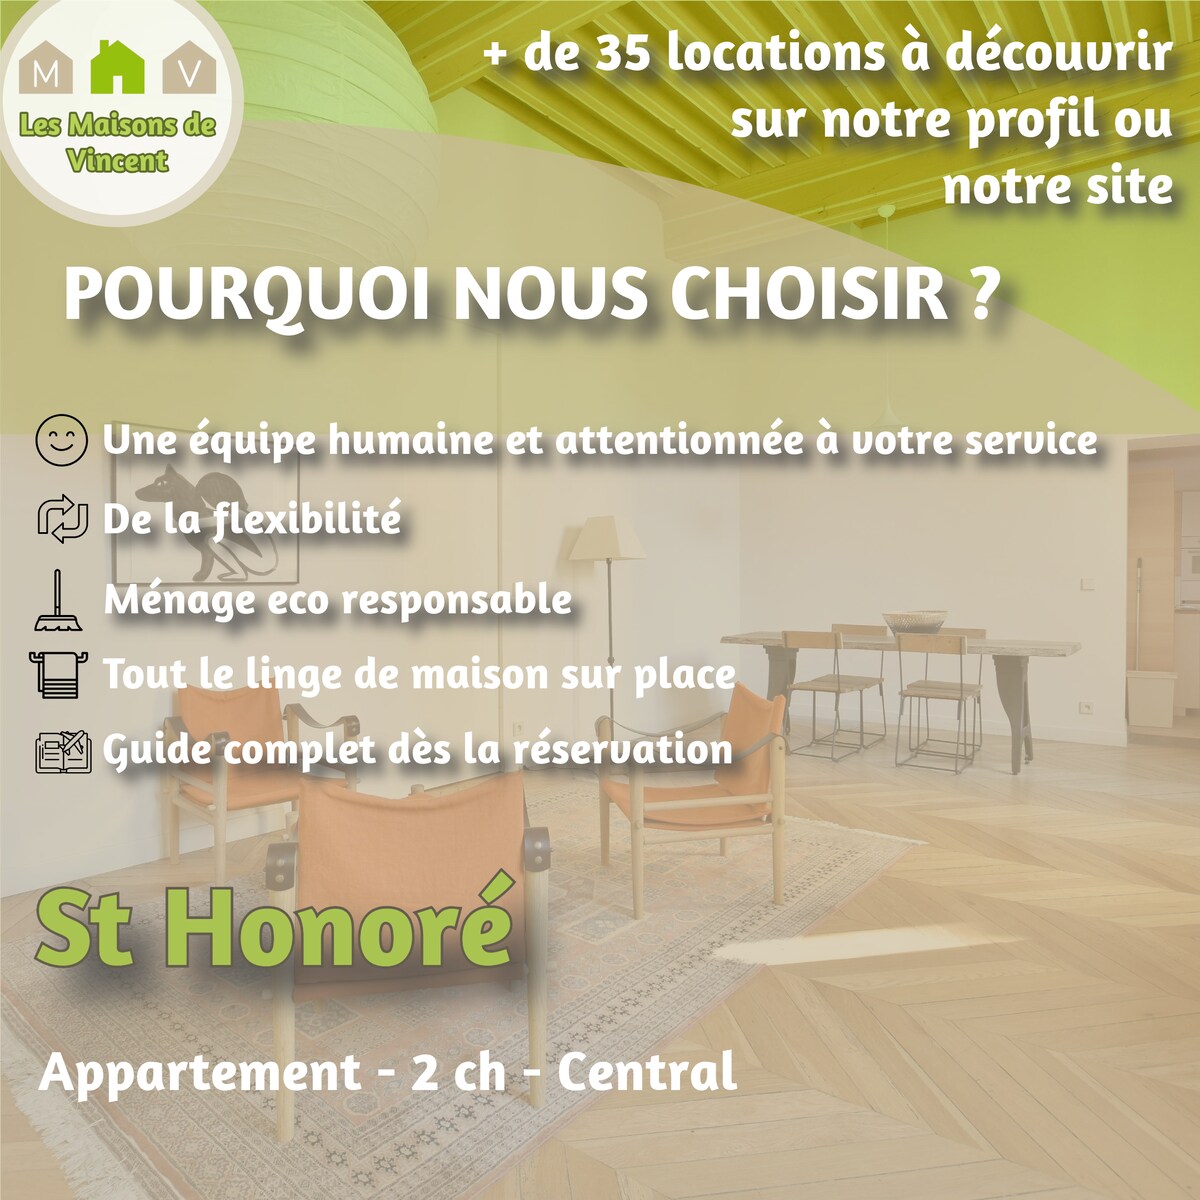 St Honoré -前酒店公寓设计